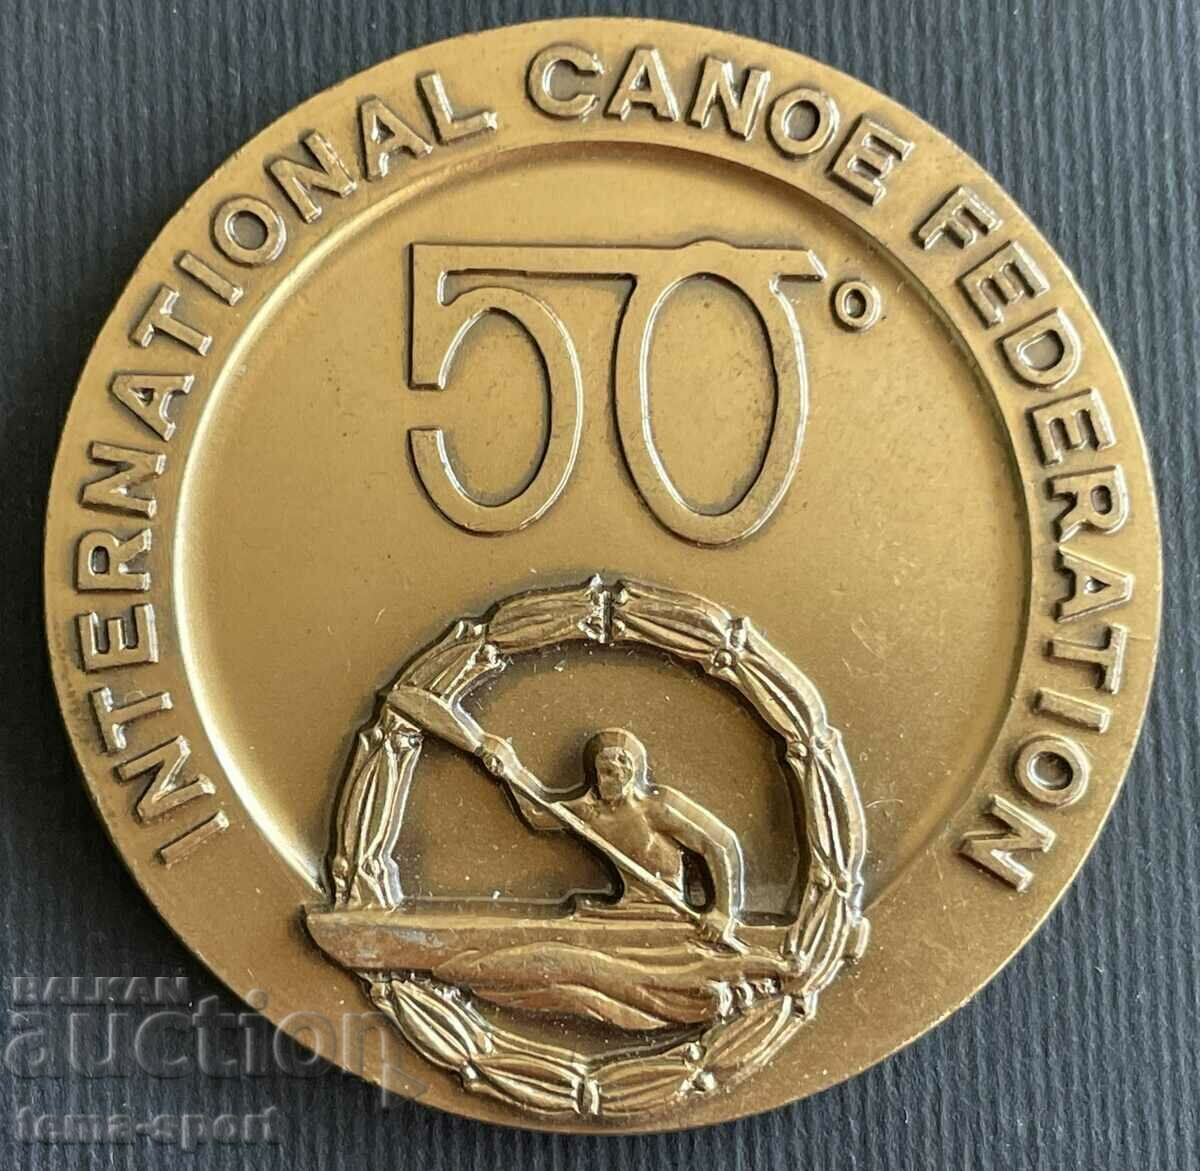 32 Placa 50 de ani. Federația Internațională de Canoe 1974